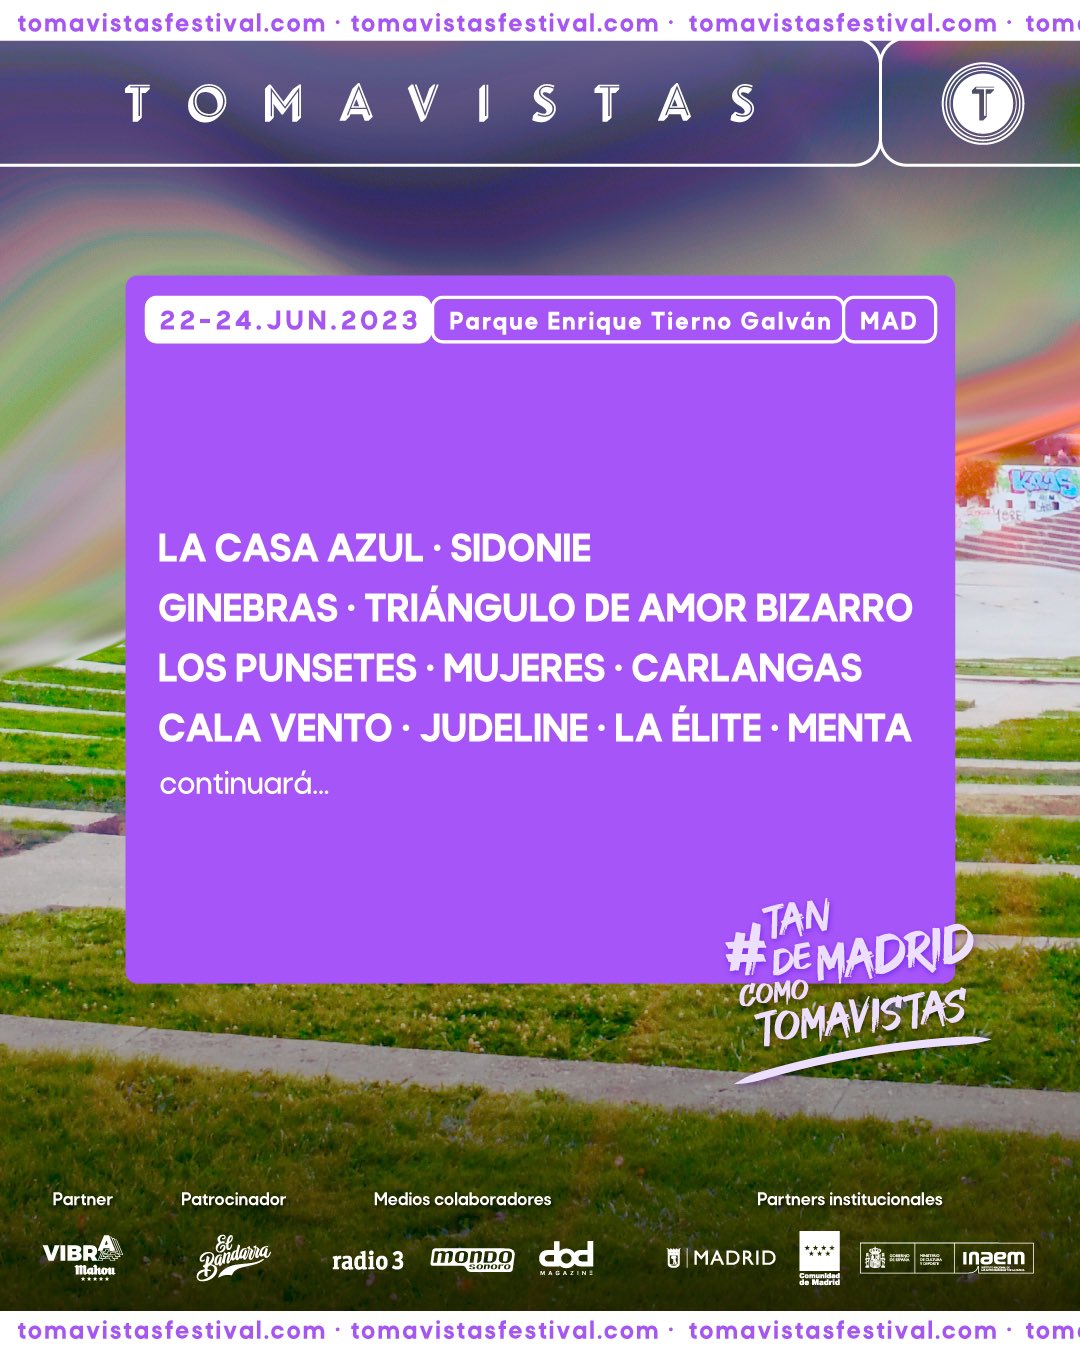 Festival Tomavistas 2023